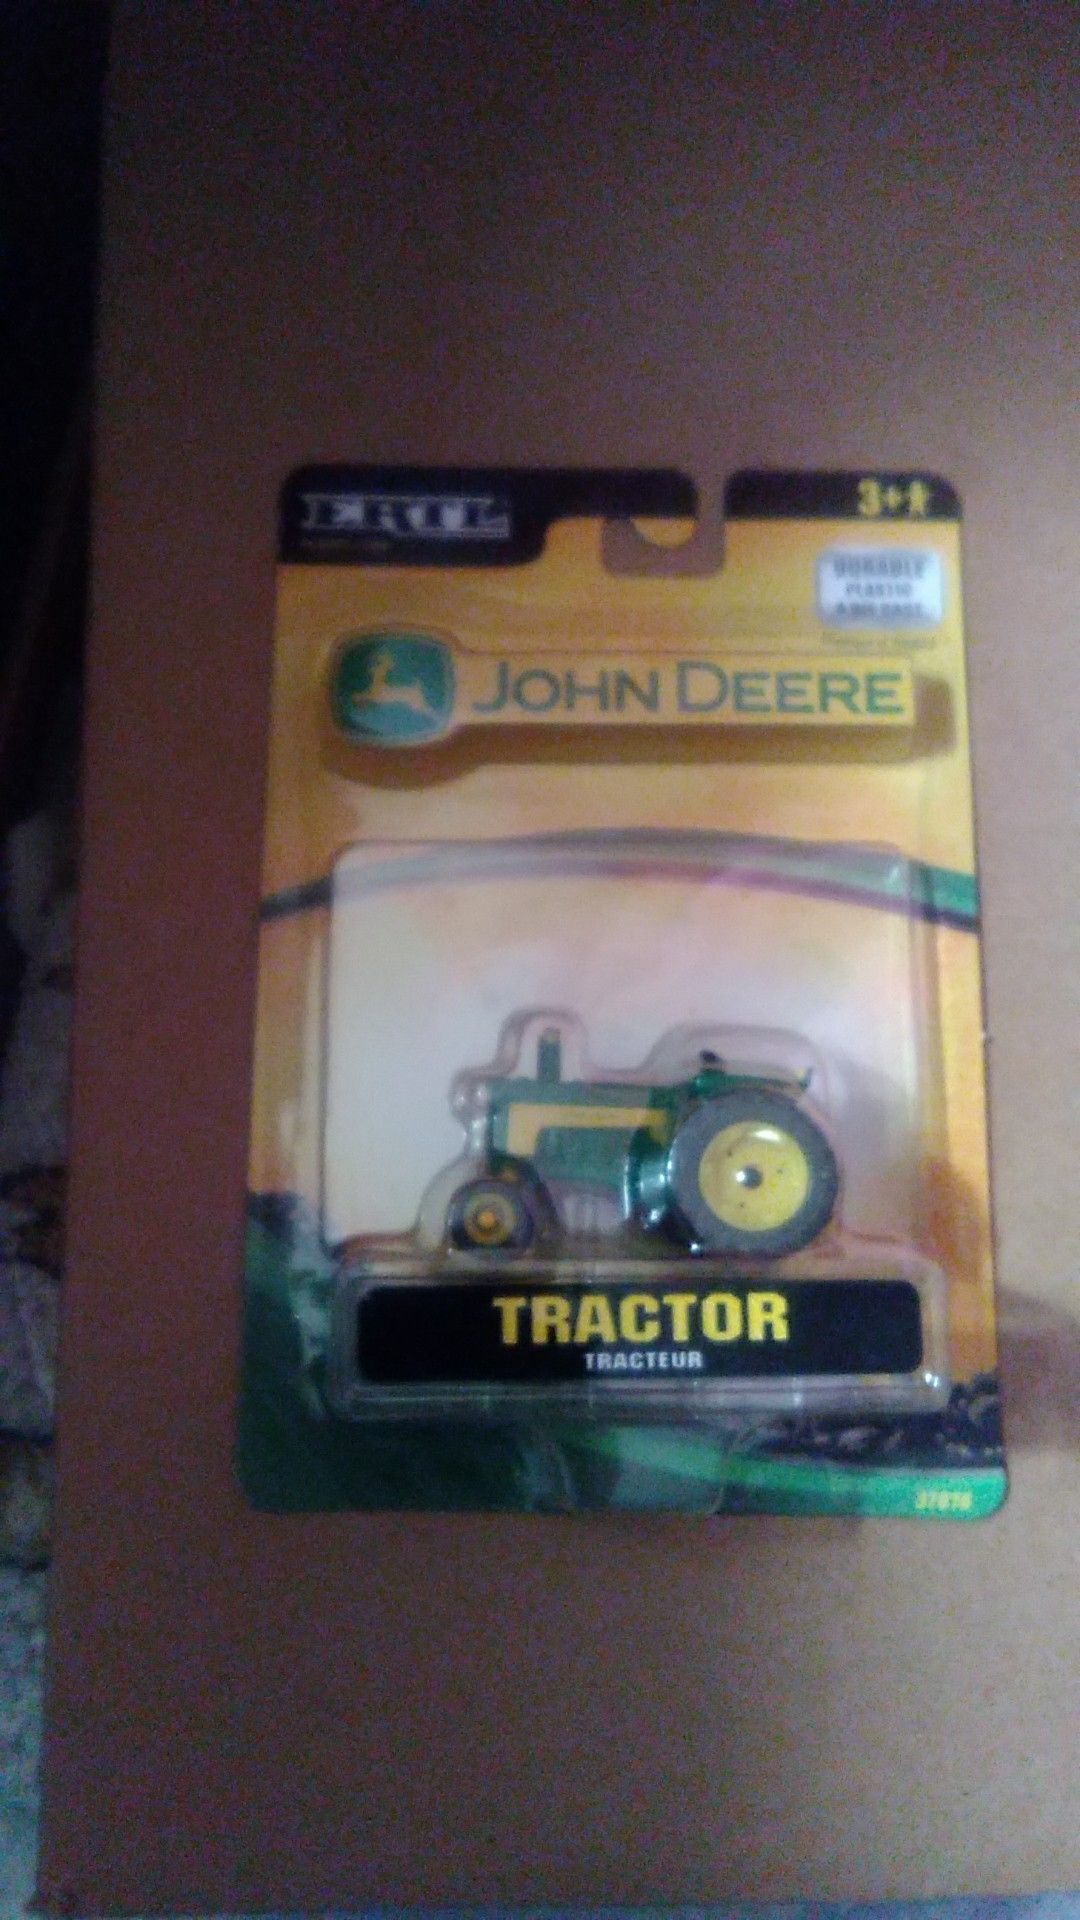 Ertl john deer die cast tractor new